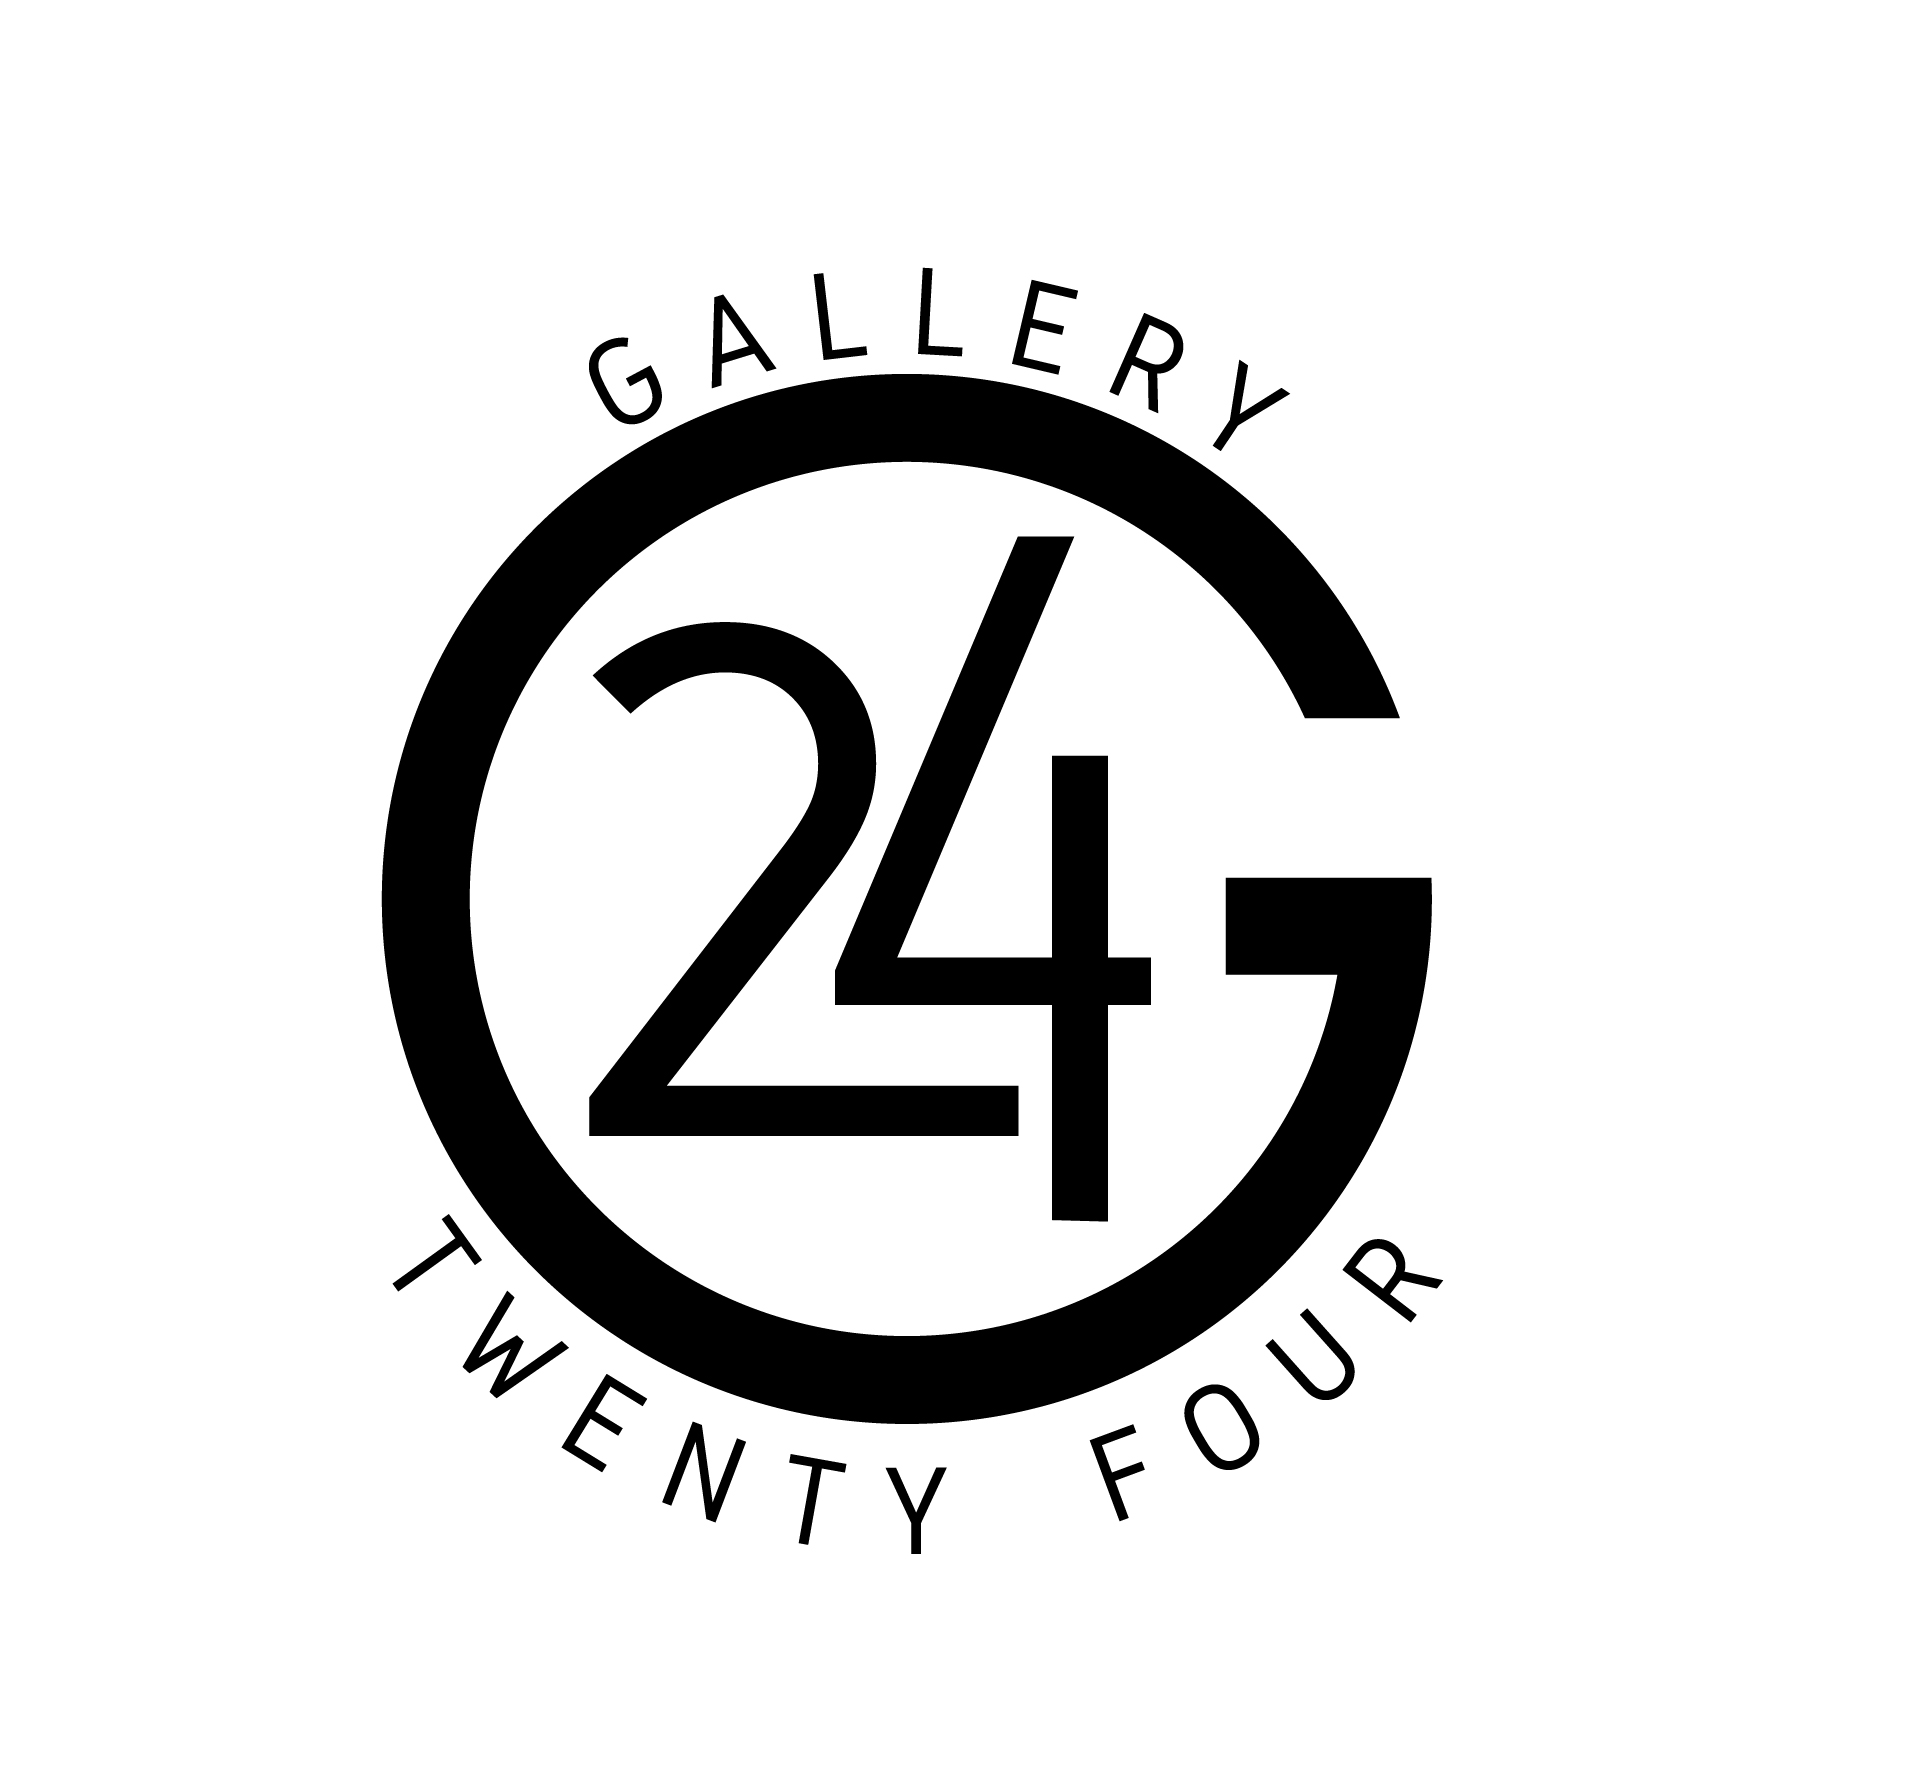 Gallery 24 logo2022 02 Artboard 2